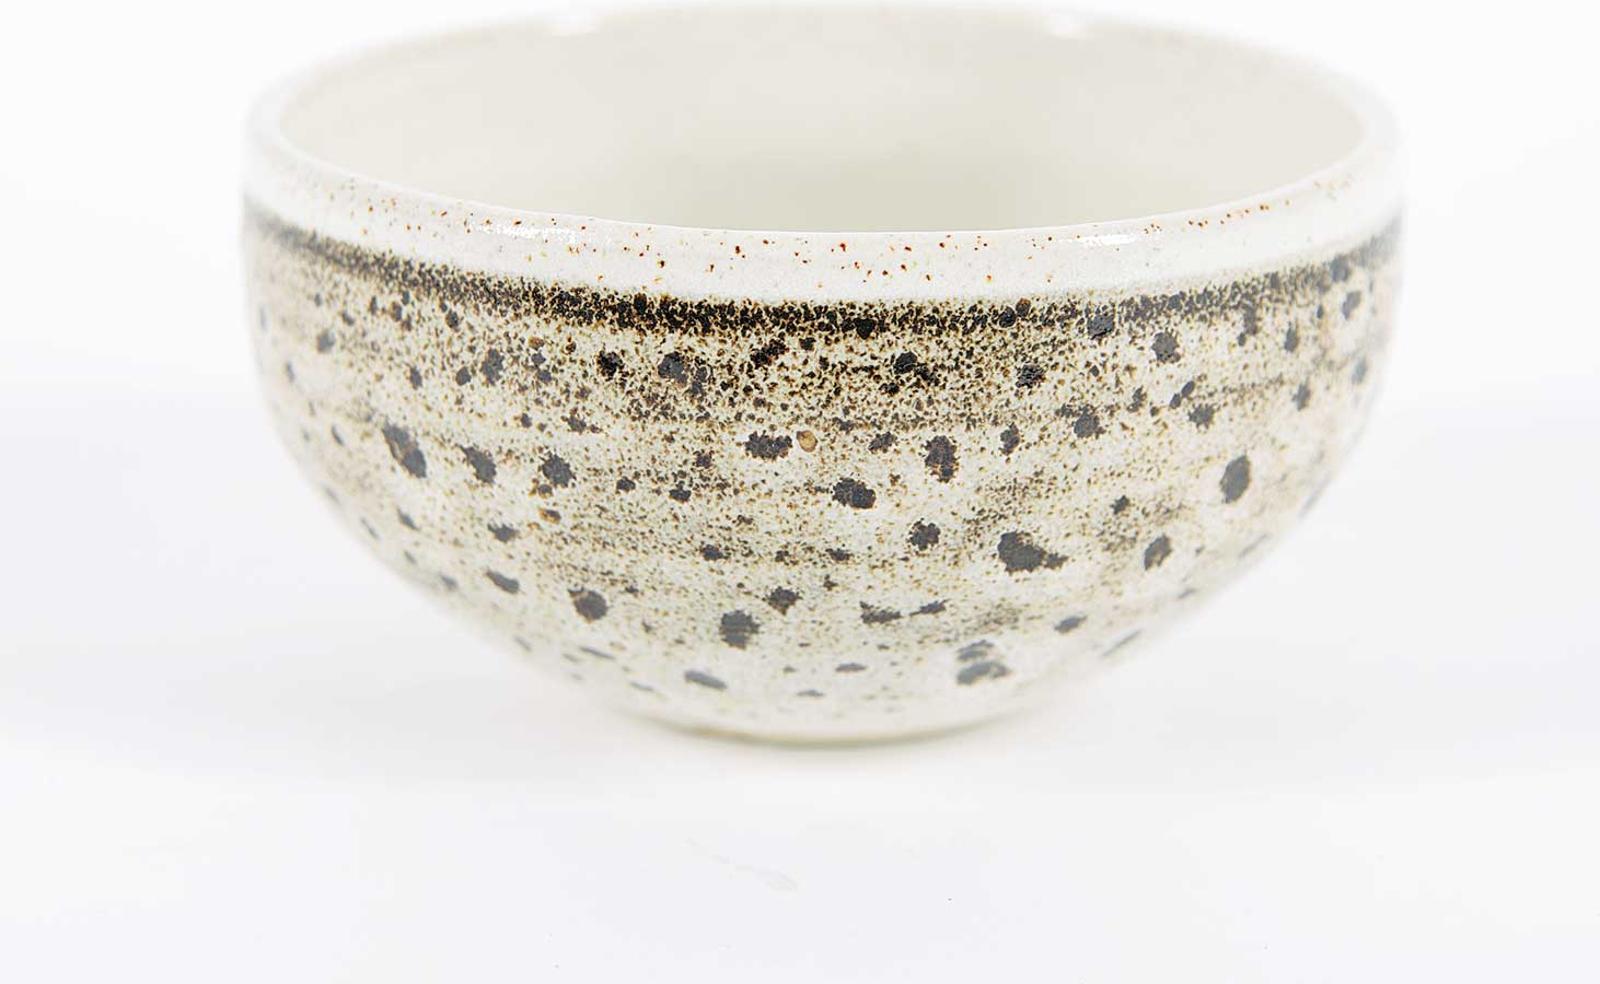 Johnathan Middlemiss - Untitled - Small Stonewear Bowl